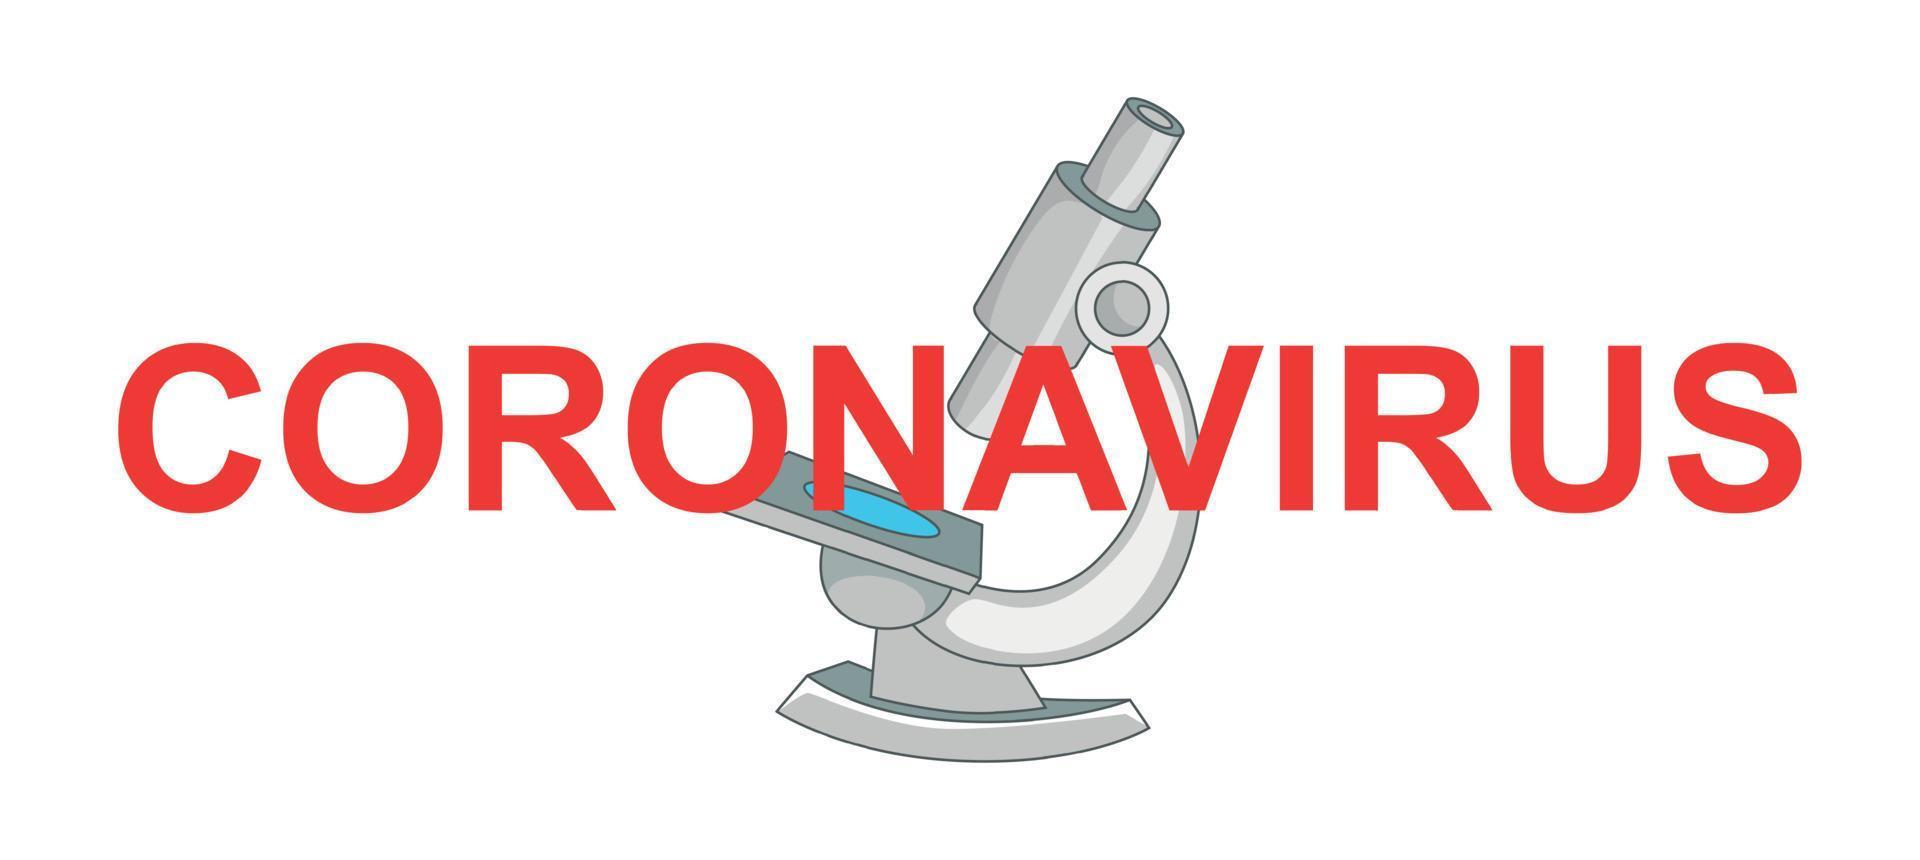 Coronavirus vector icon cartoon style